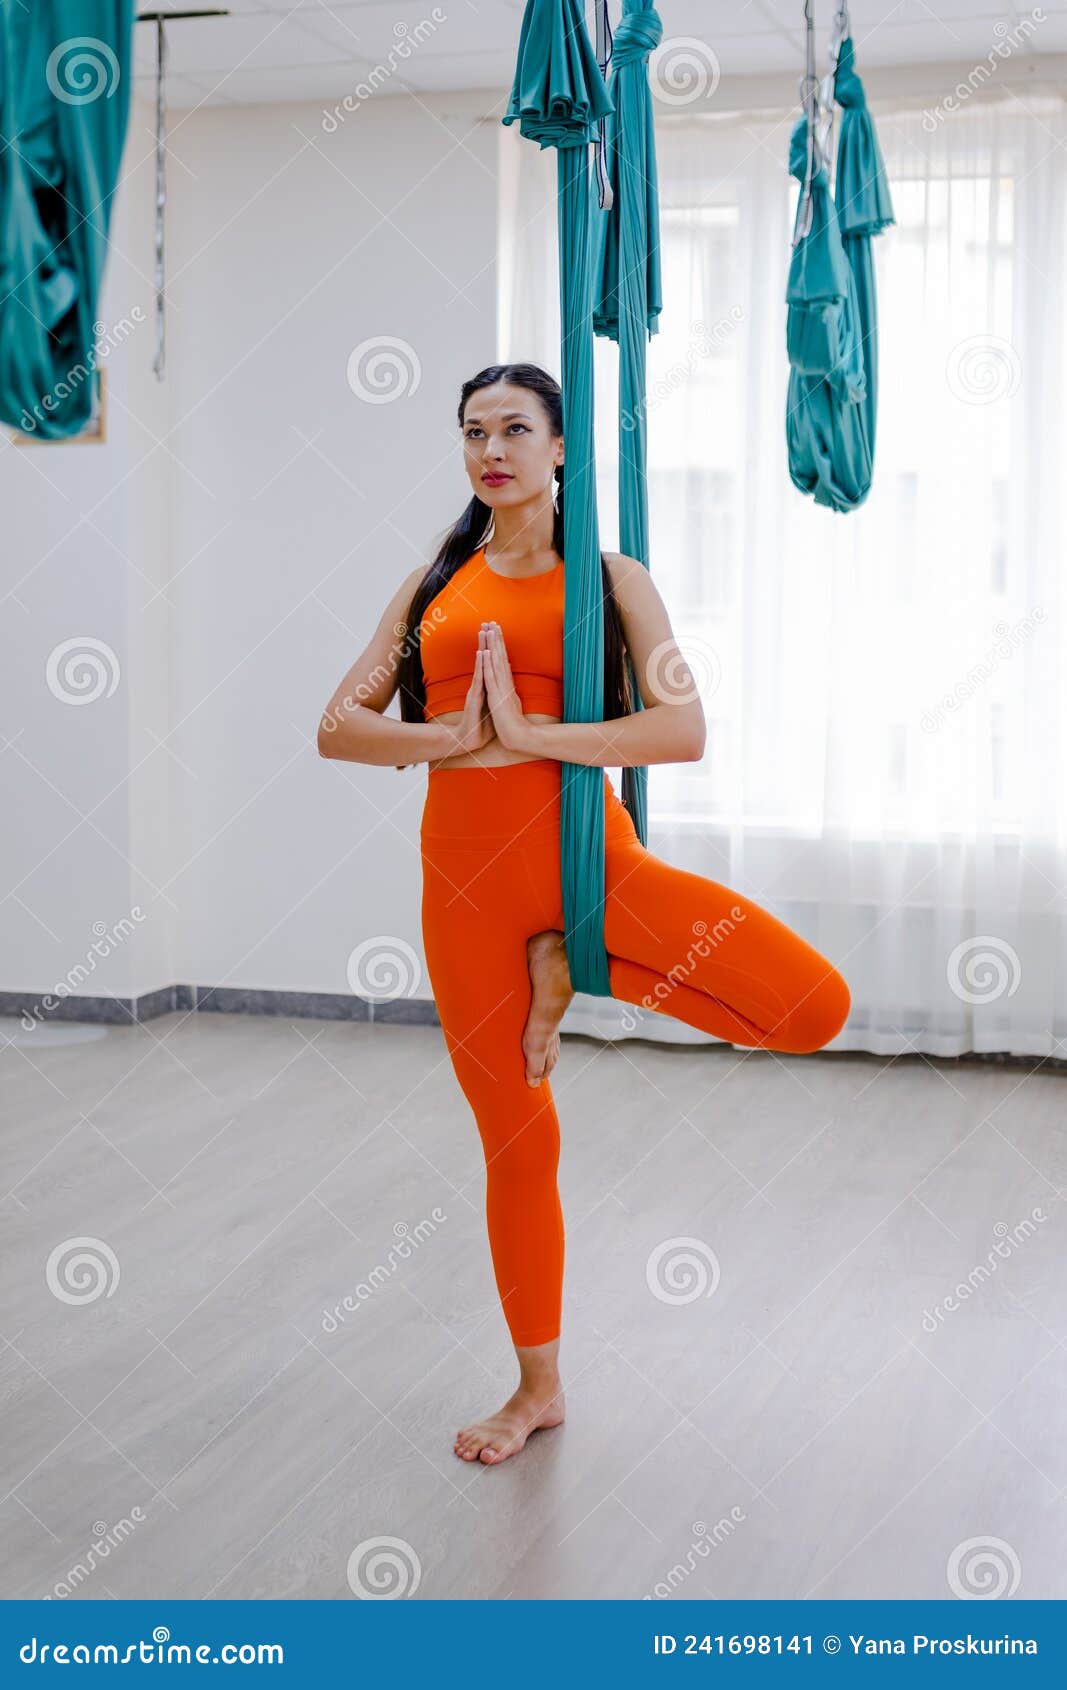 Mujer Morena De 25 Años Colgando Con Hamaca Para El Yoga. Señora Con Ropa  Deportiva Naranja Imagen de archivo - Imagen de coloque, deporte: 241698141